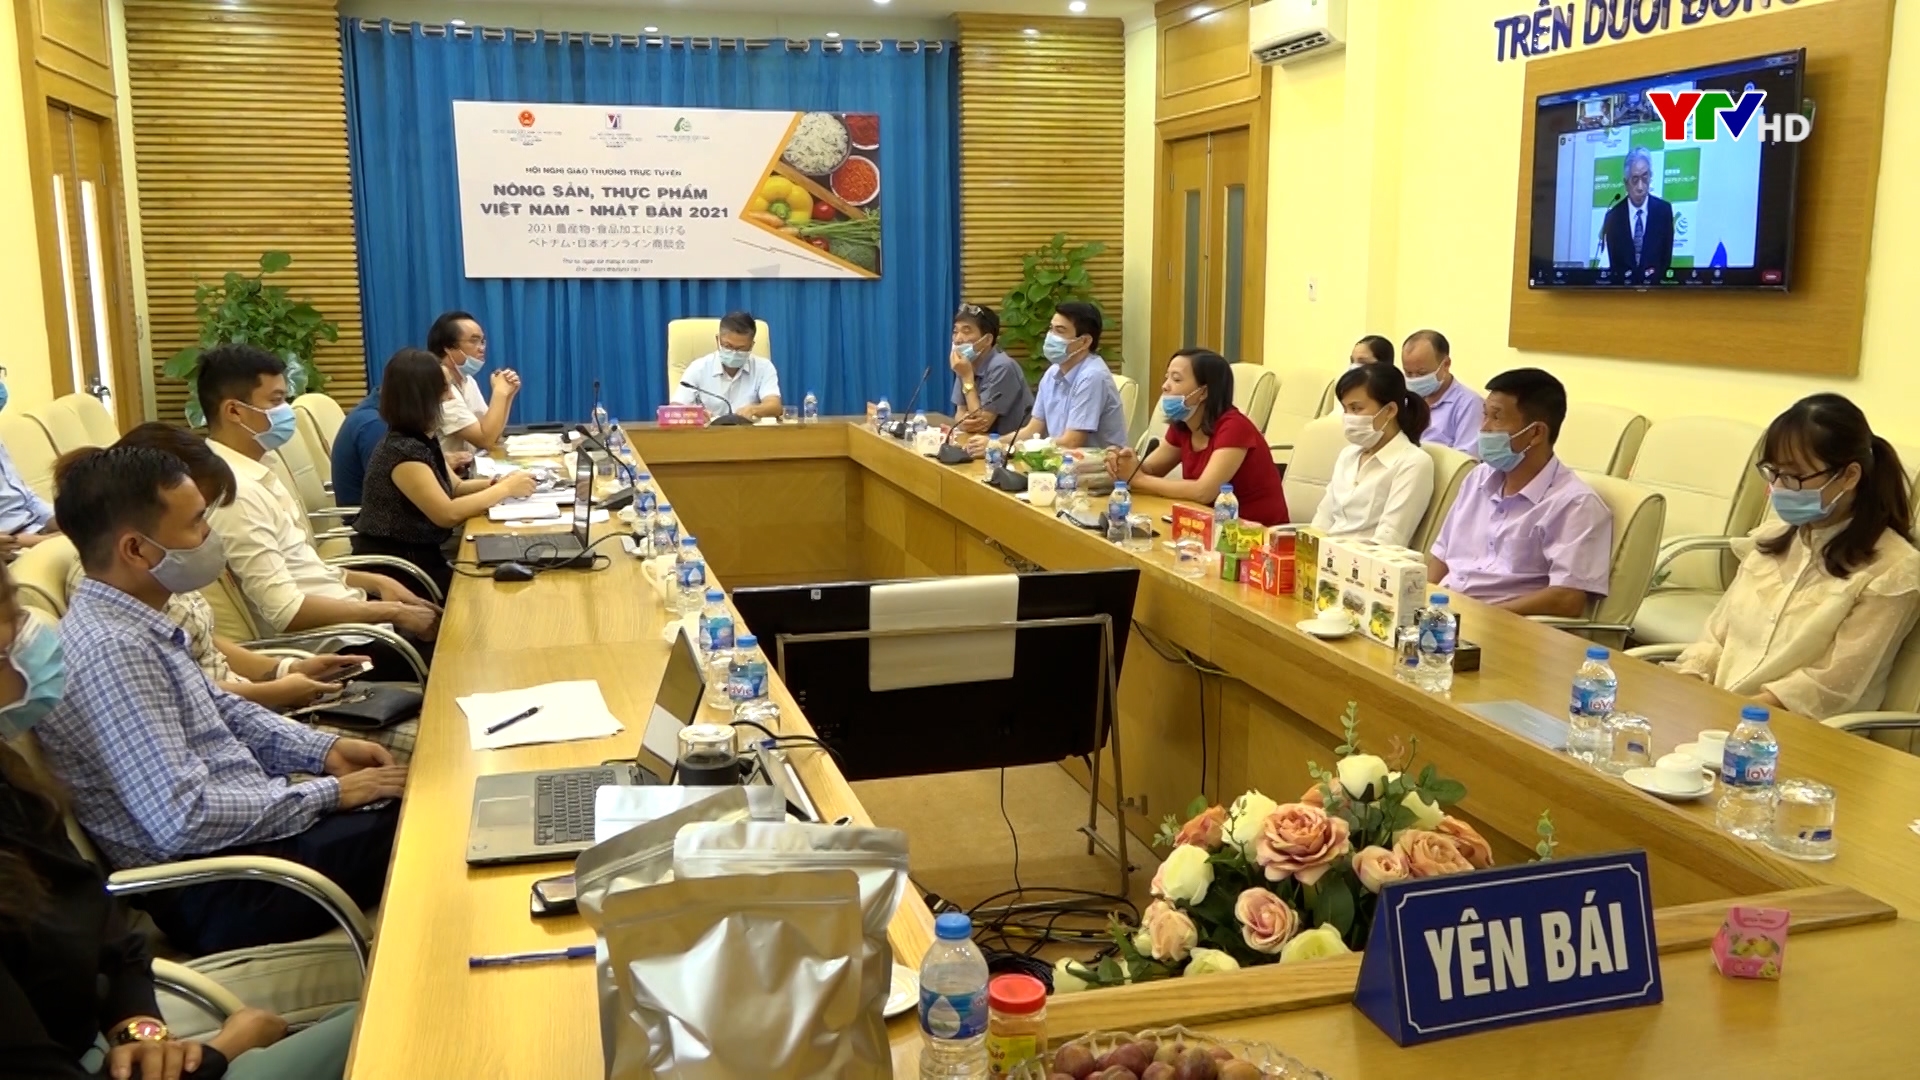 Yên Bái tham dự Hội nghị giao thương trực tuyến “Nông sản, thực phẩm Việt Nam – Nhật Bản 2021”